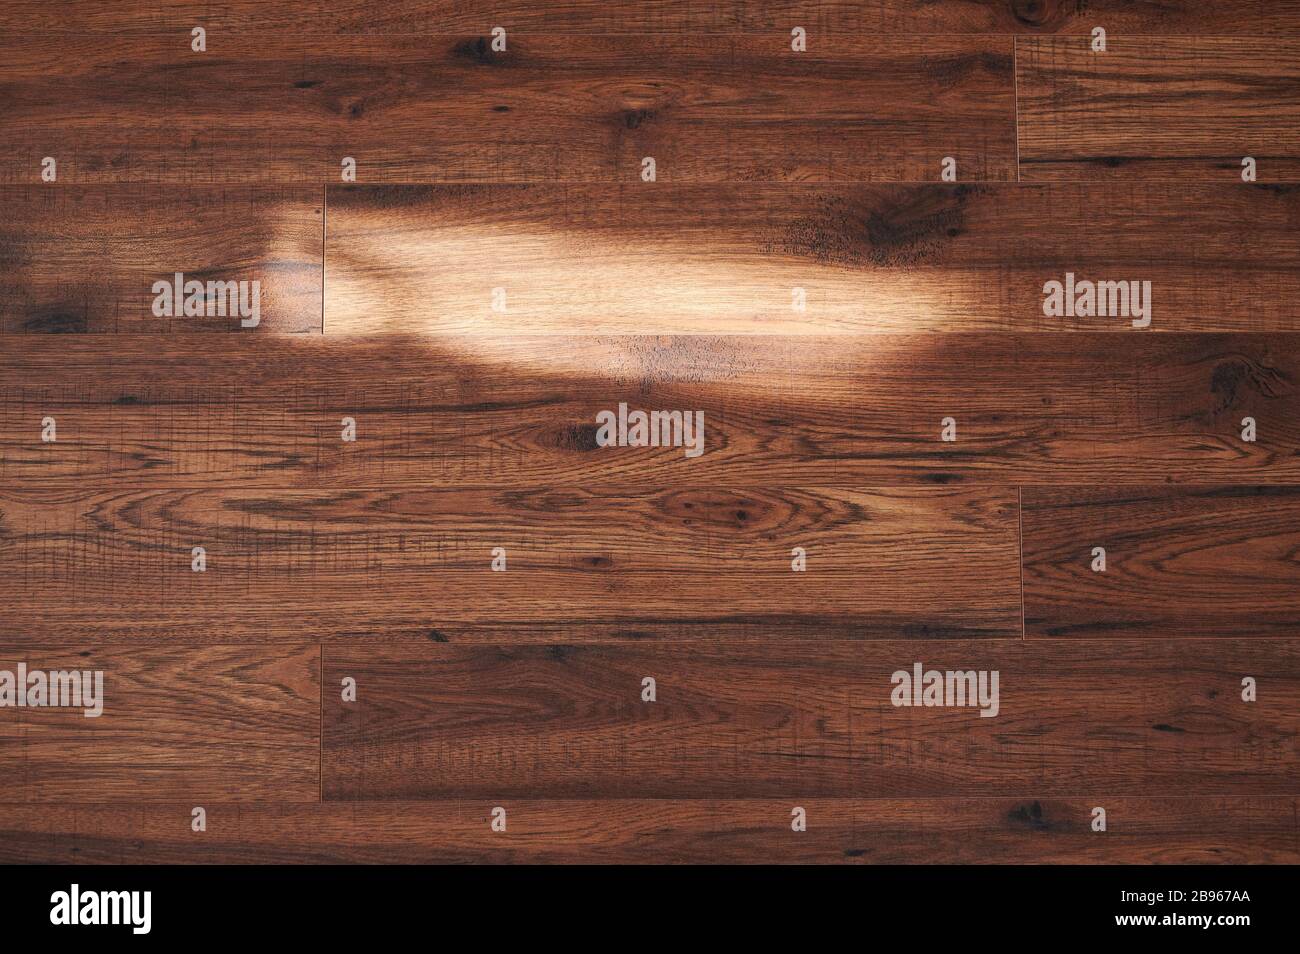 Light spot on wooden floor background. Sun ray on wood surface Stock Photo